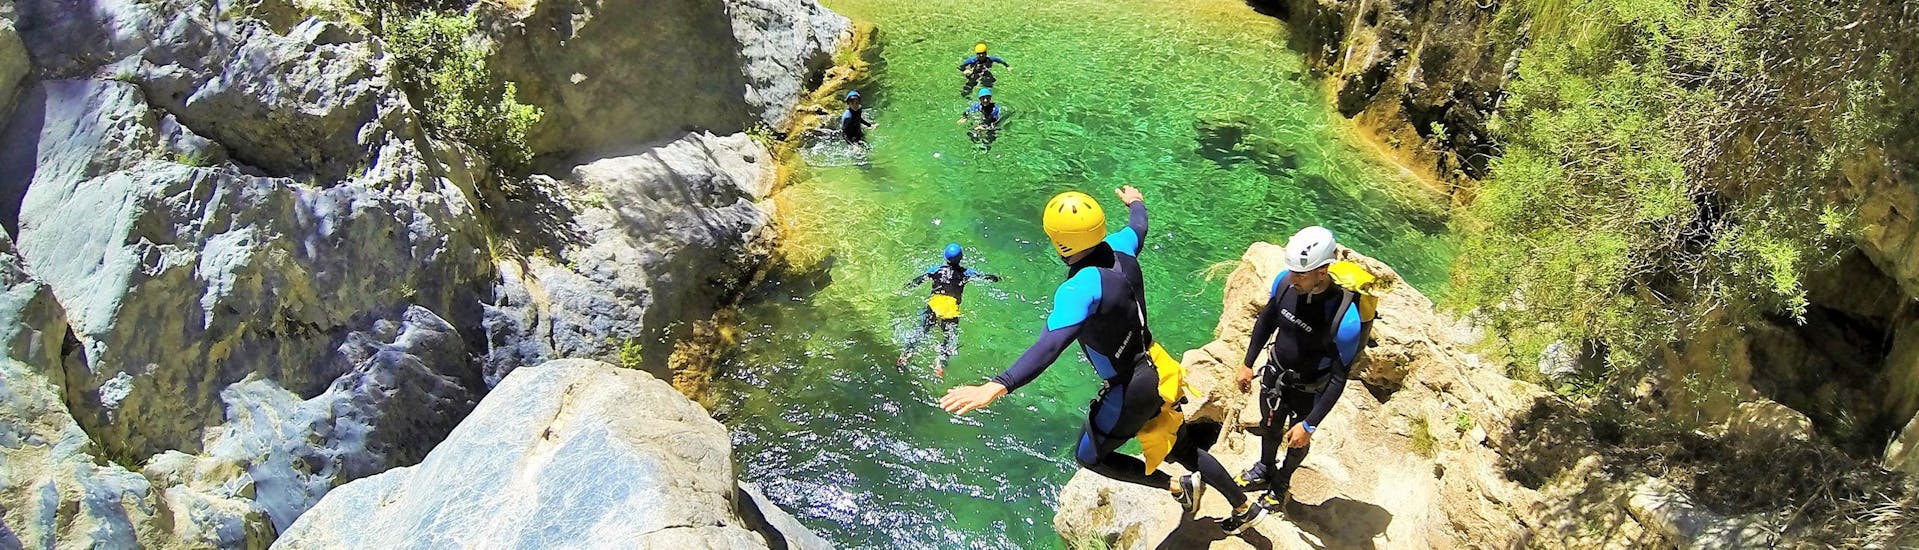 Algunos participantes se divierten durante su tour de barranquismo con Barranquismo Río Verde mientras saltan de un acantilado a las aguas cristalinas.